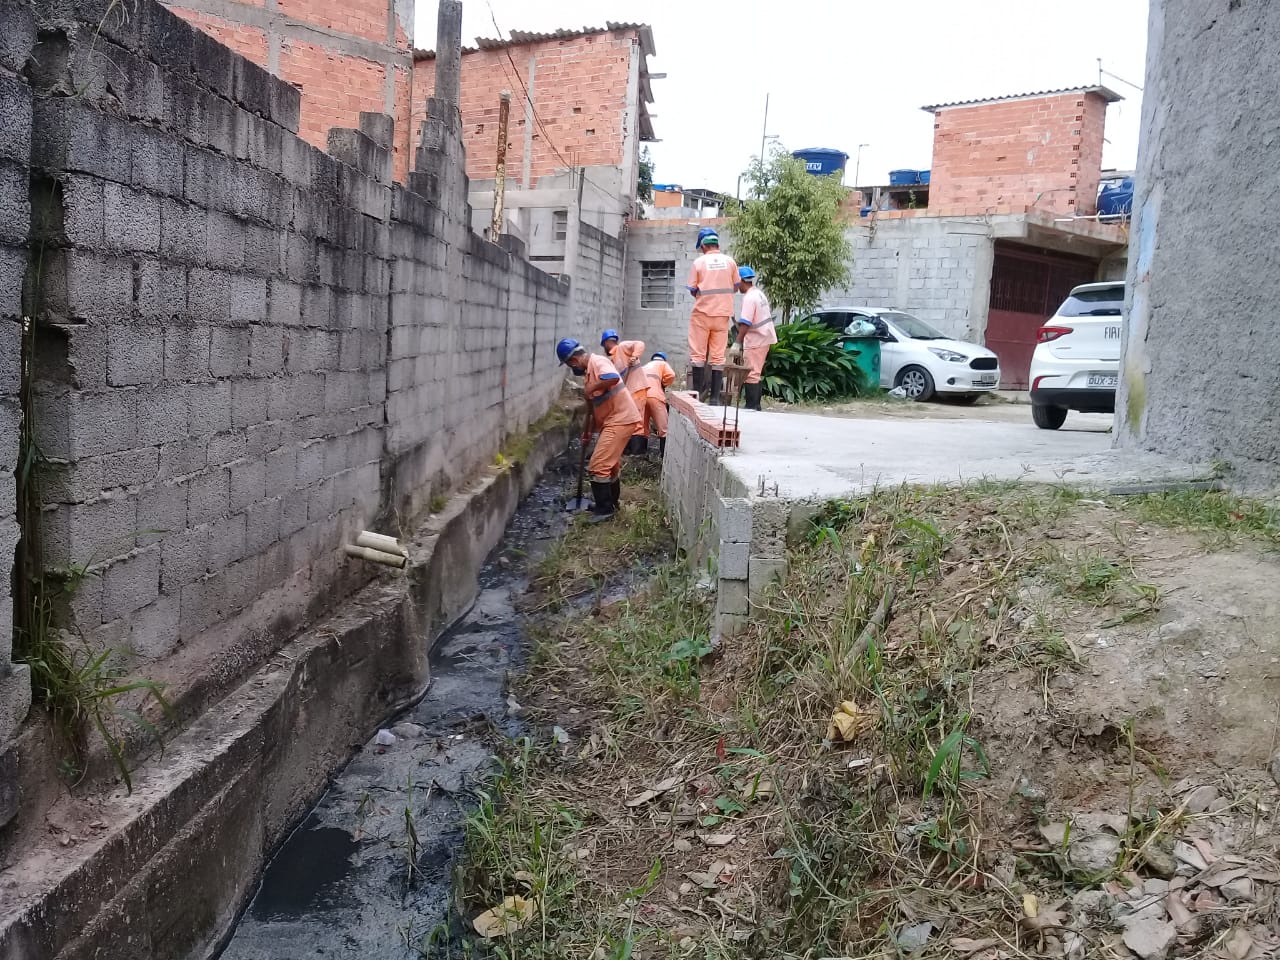 #PraCegoVer - Trabalhadores da Subprefeitura removem obstruções do córrego. Do lado esquerdo, há um muro de blocos de concreto. Do lado direito, uma plataforma de cimento.